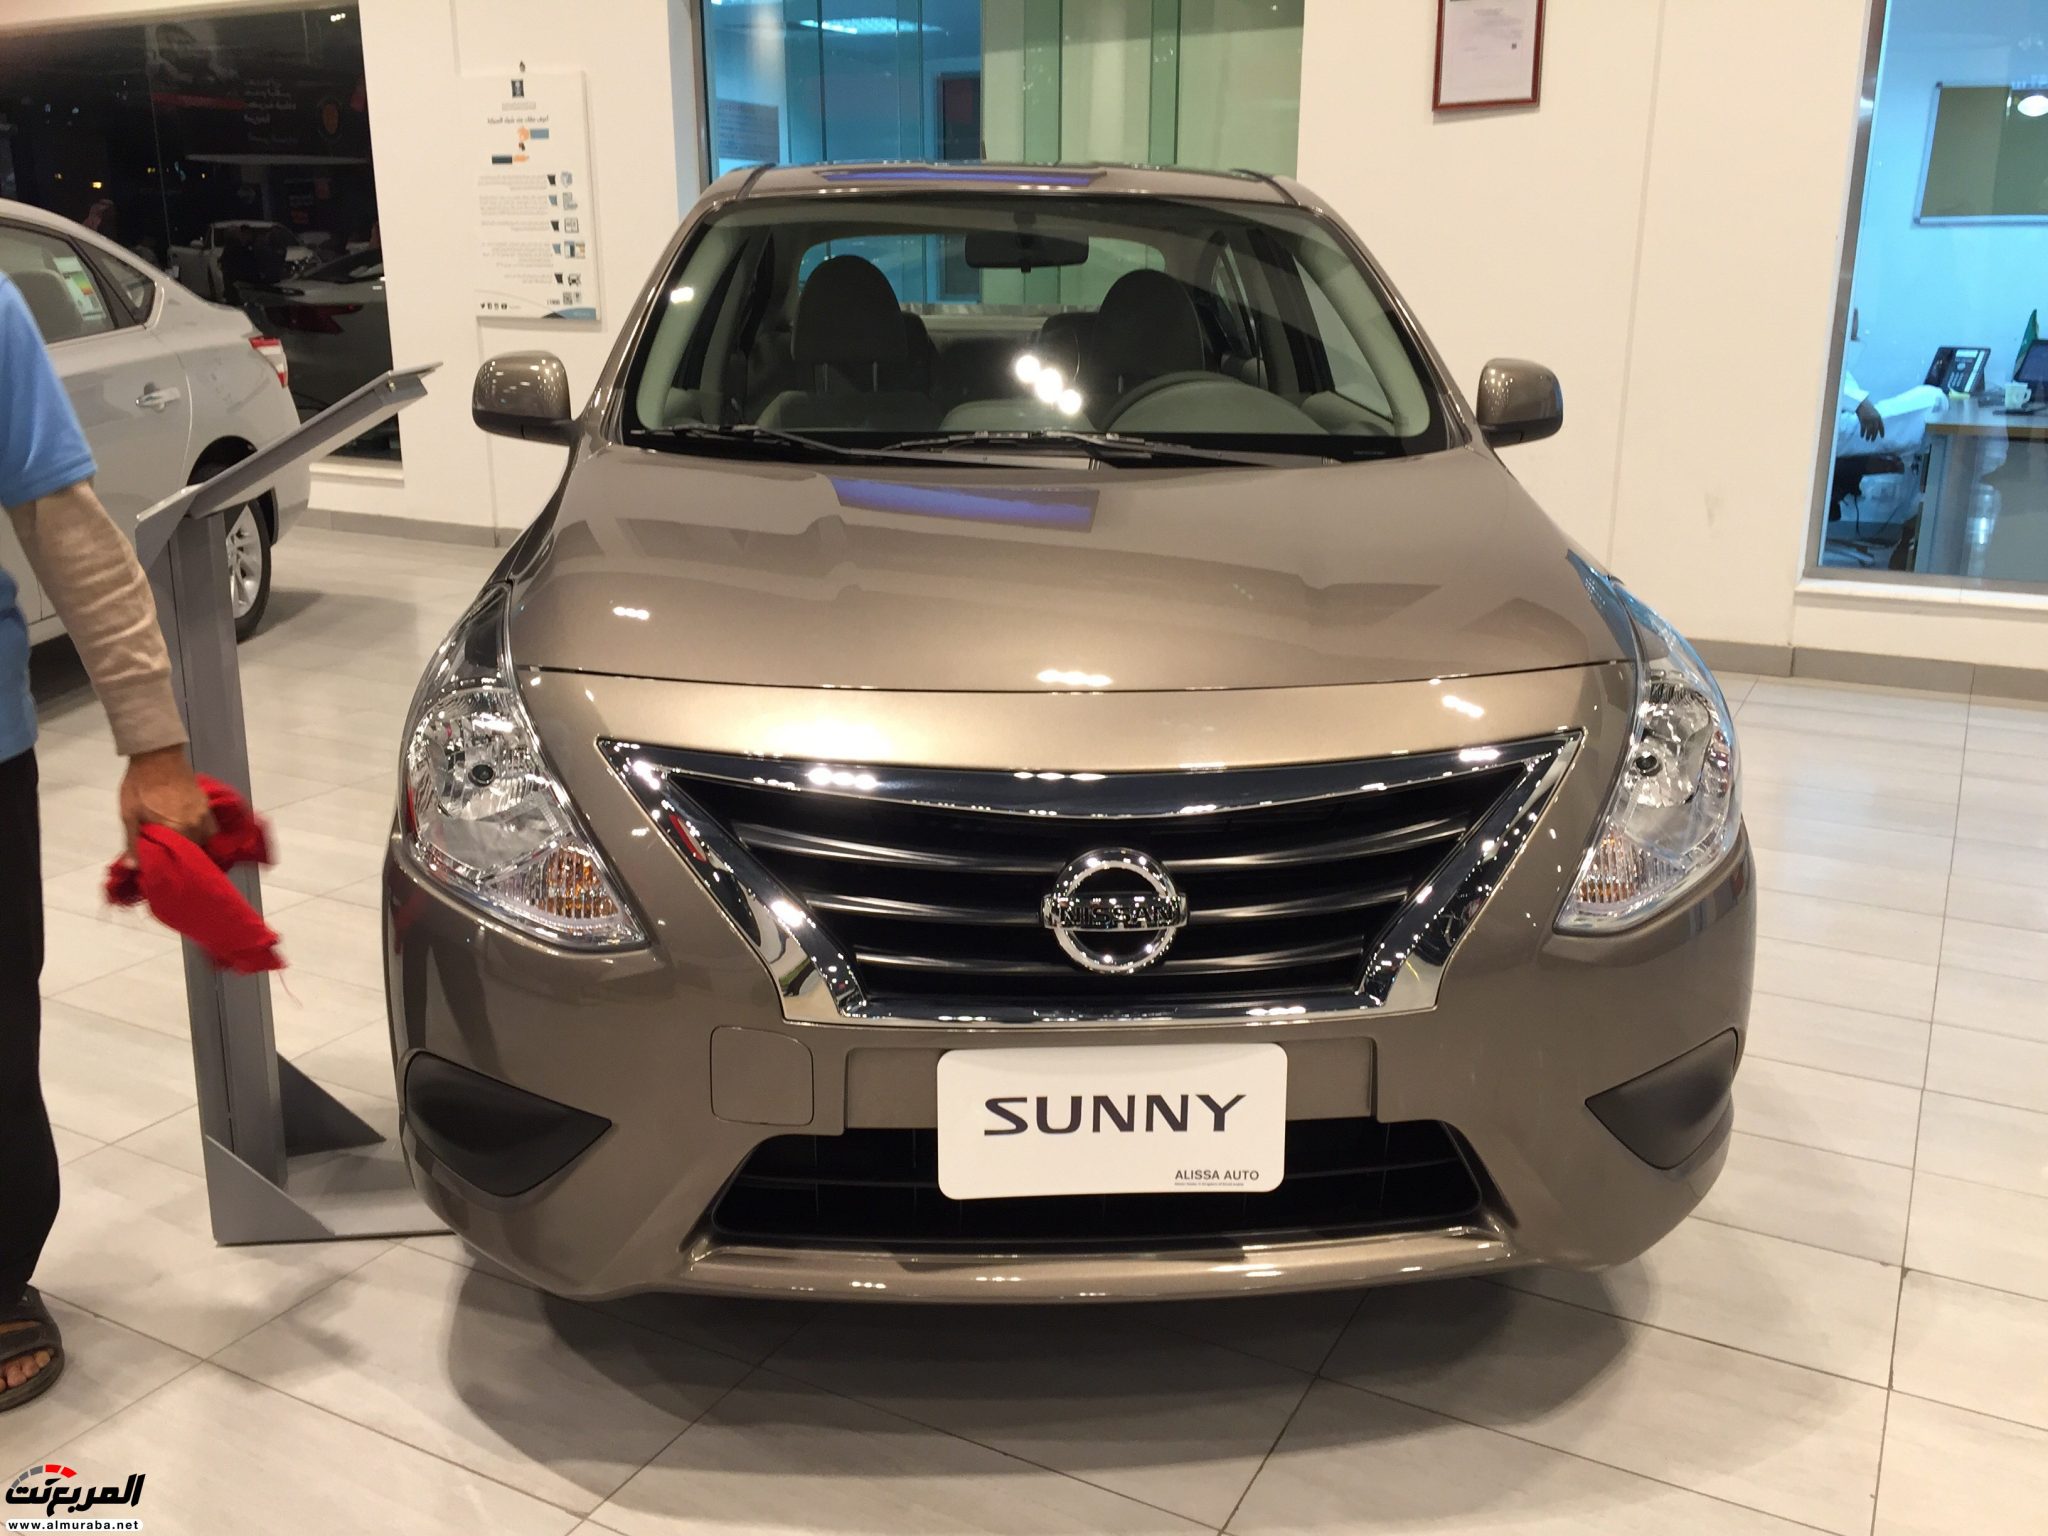 نيسان صني 2018 في السعودية لدى العيسى وبترومين + الاسعار والمواصفات لجميع الفئات Nissan Sunny